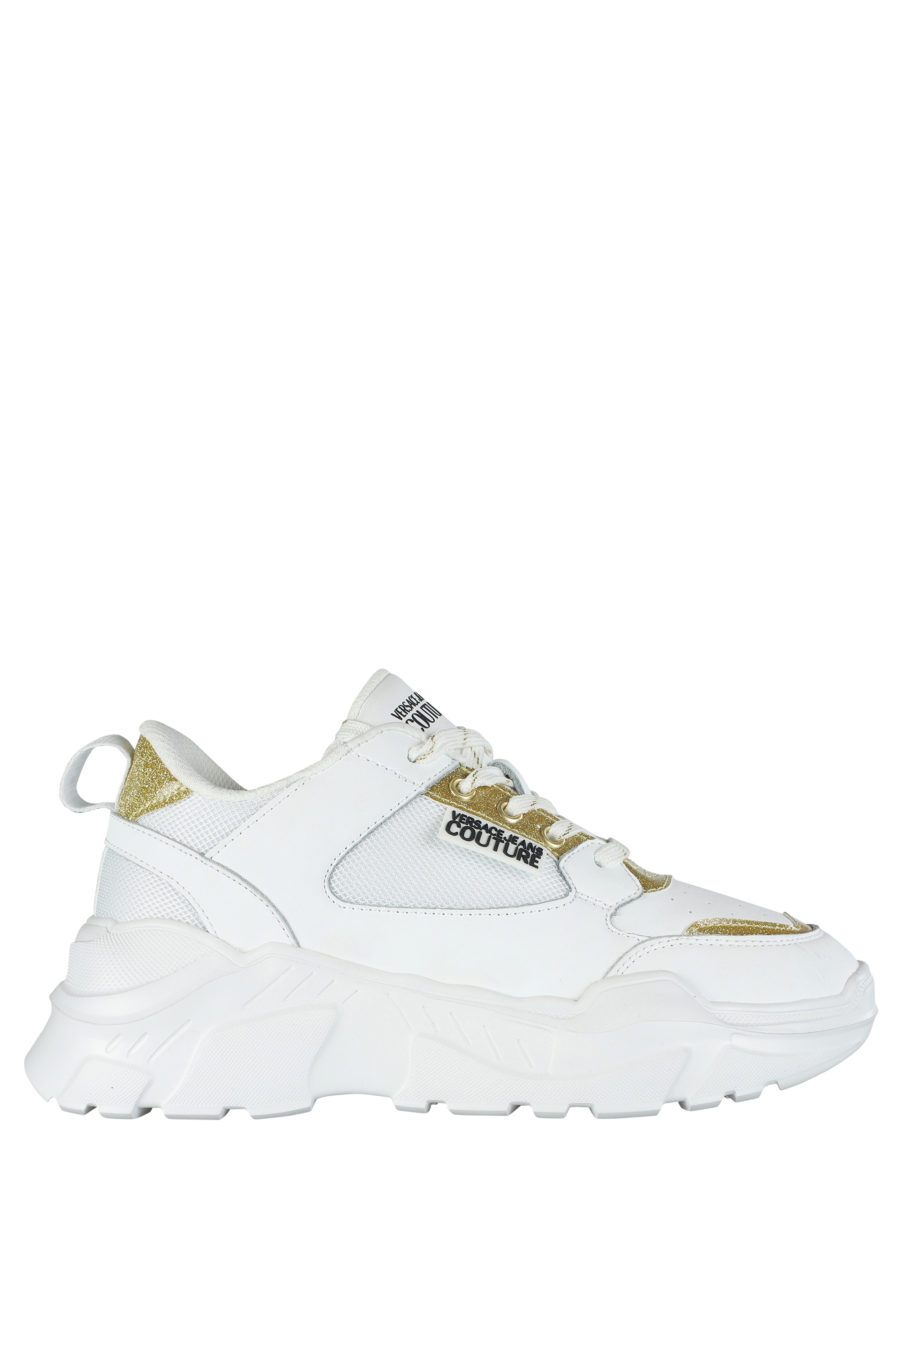 Zapatillas blancas con detalles dorado "glitter" - IMG 5280